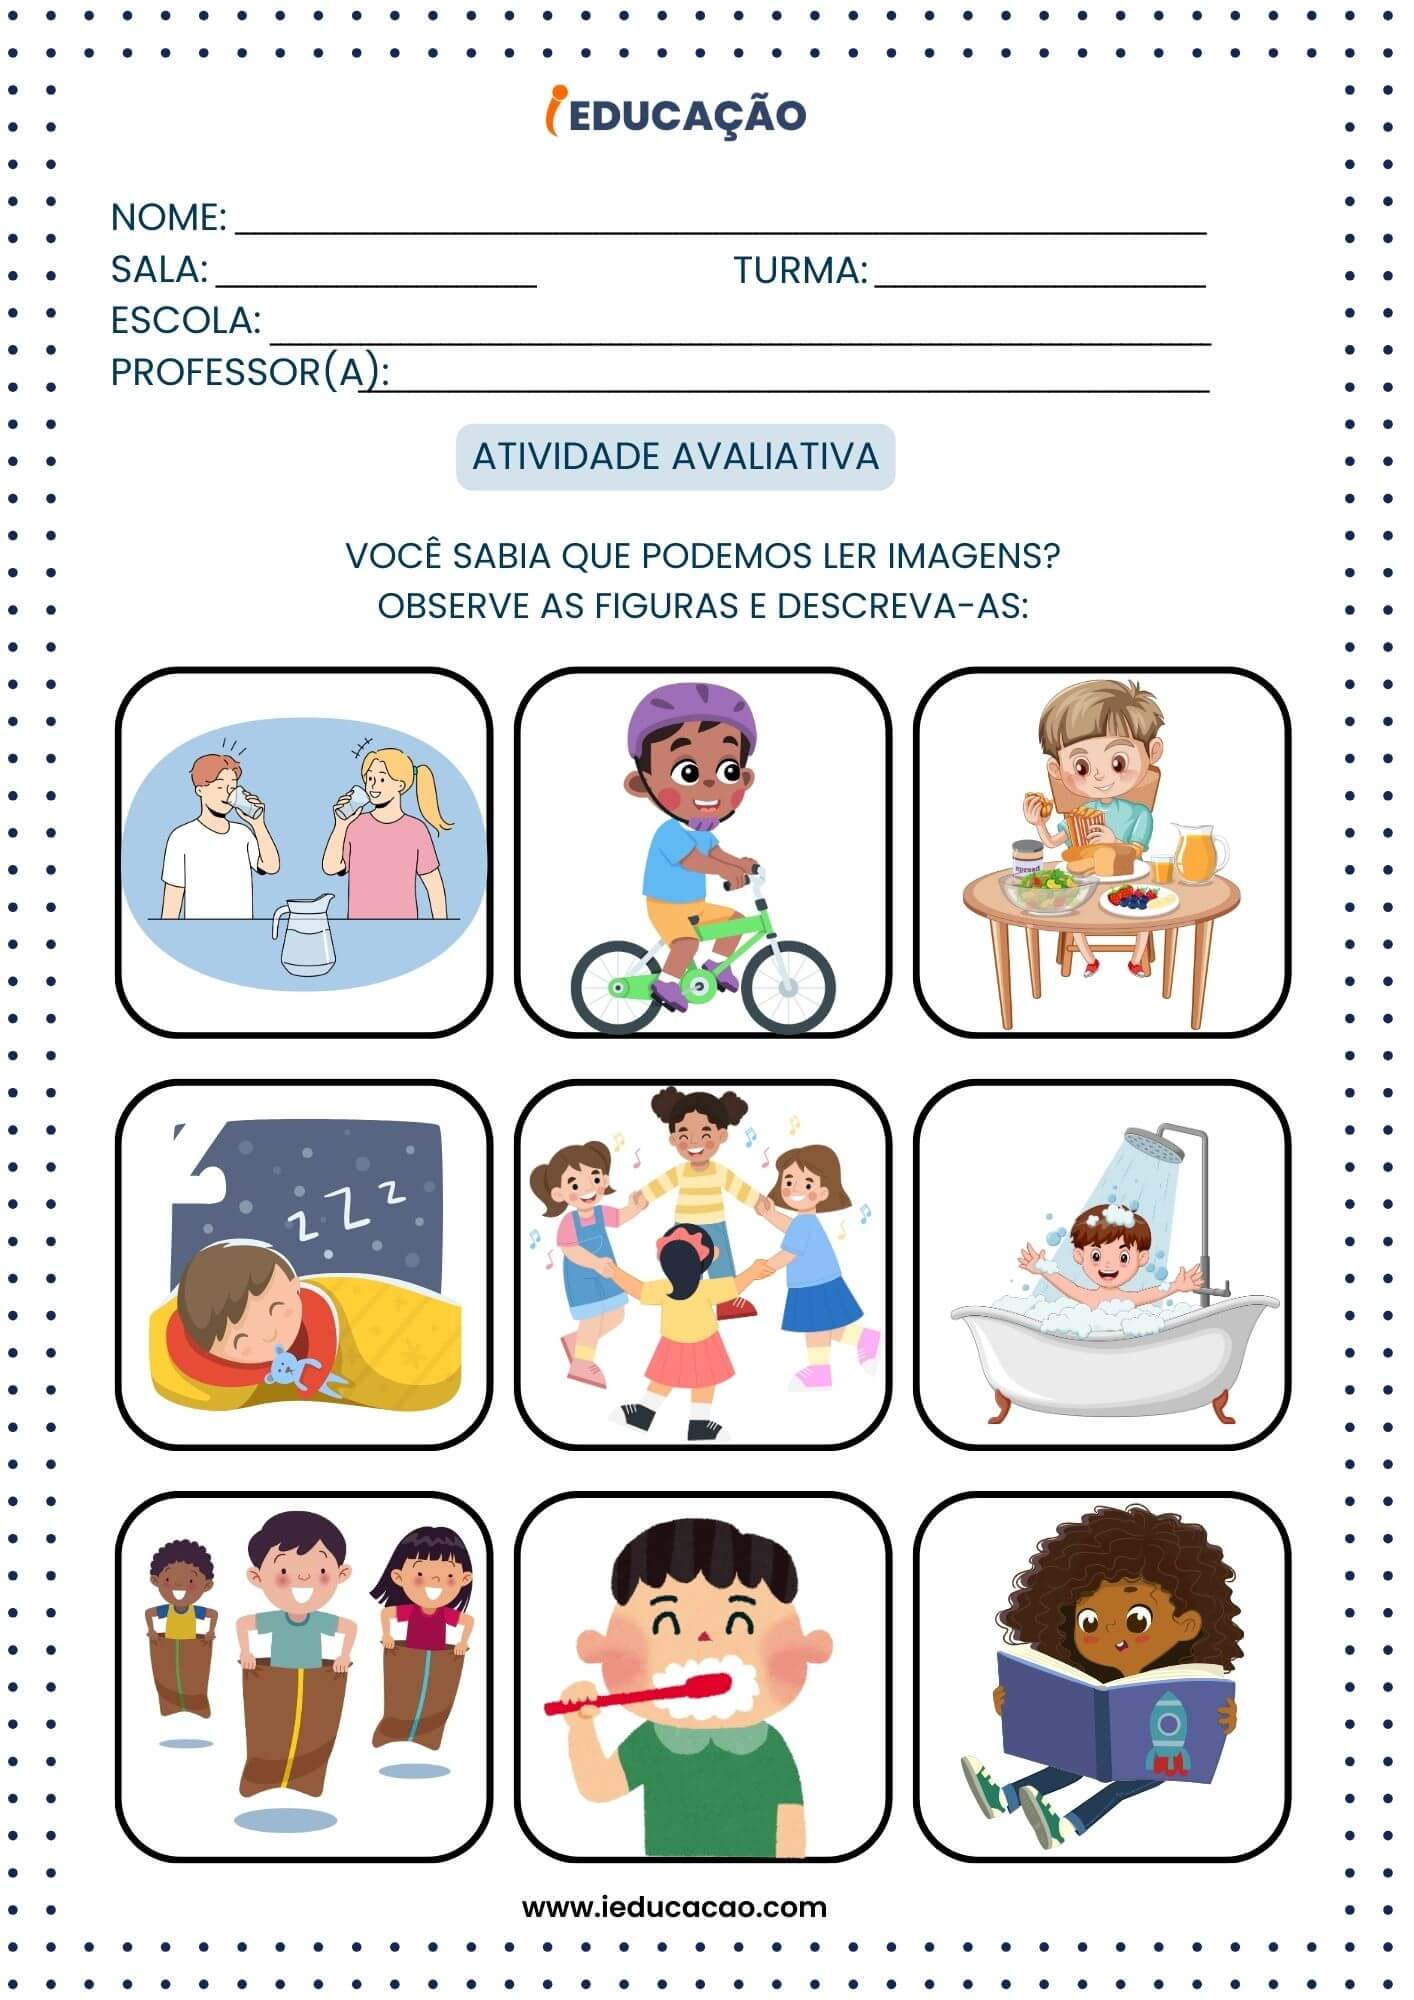 Avaliação para Educação Infantil - Atividades Avaliativas de Desenvolvimento da linguagem para educação infantil - Atividade de leitura para educação infantil.